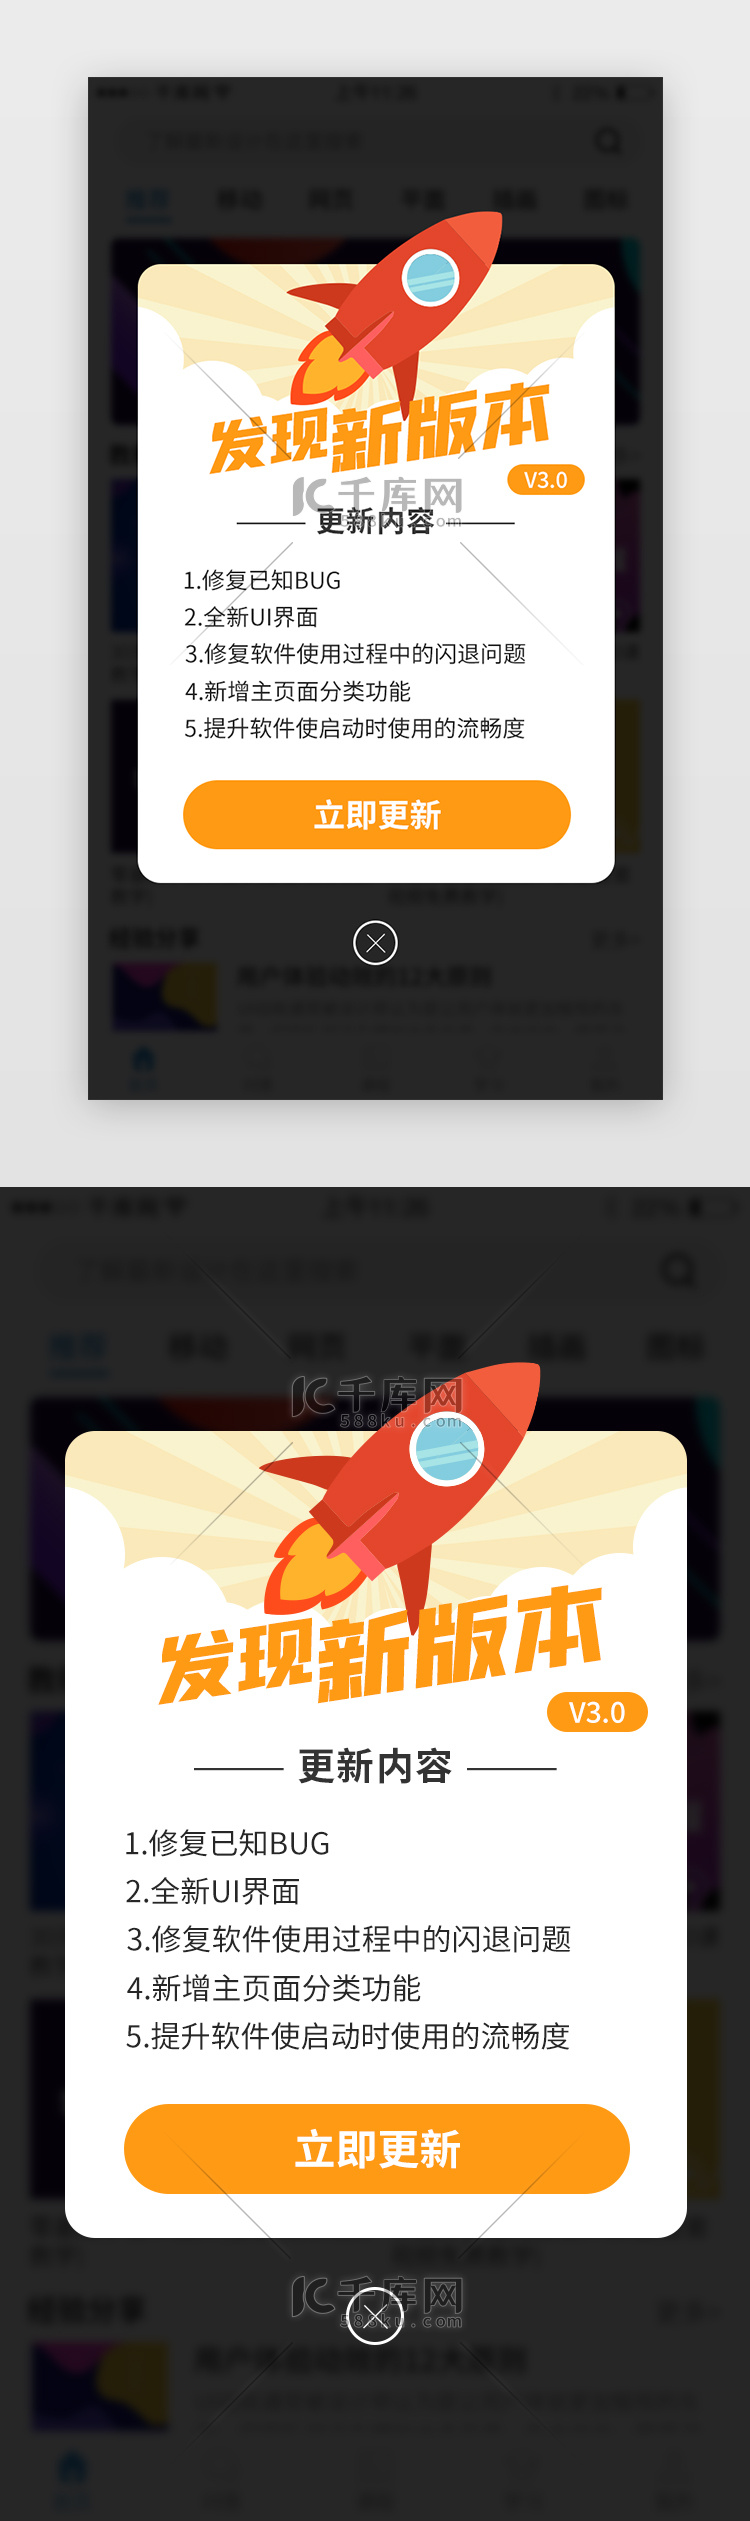 新版本更新app弹窗创意橙色火箭